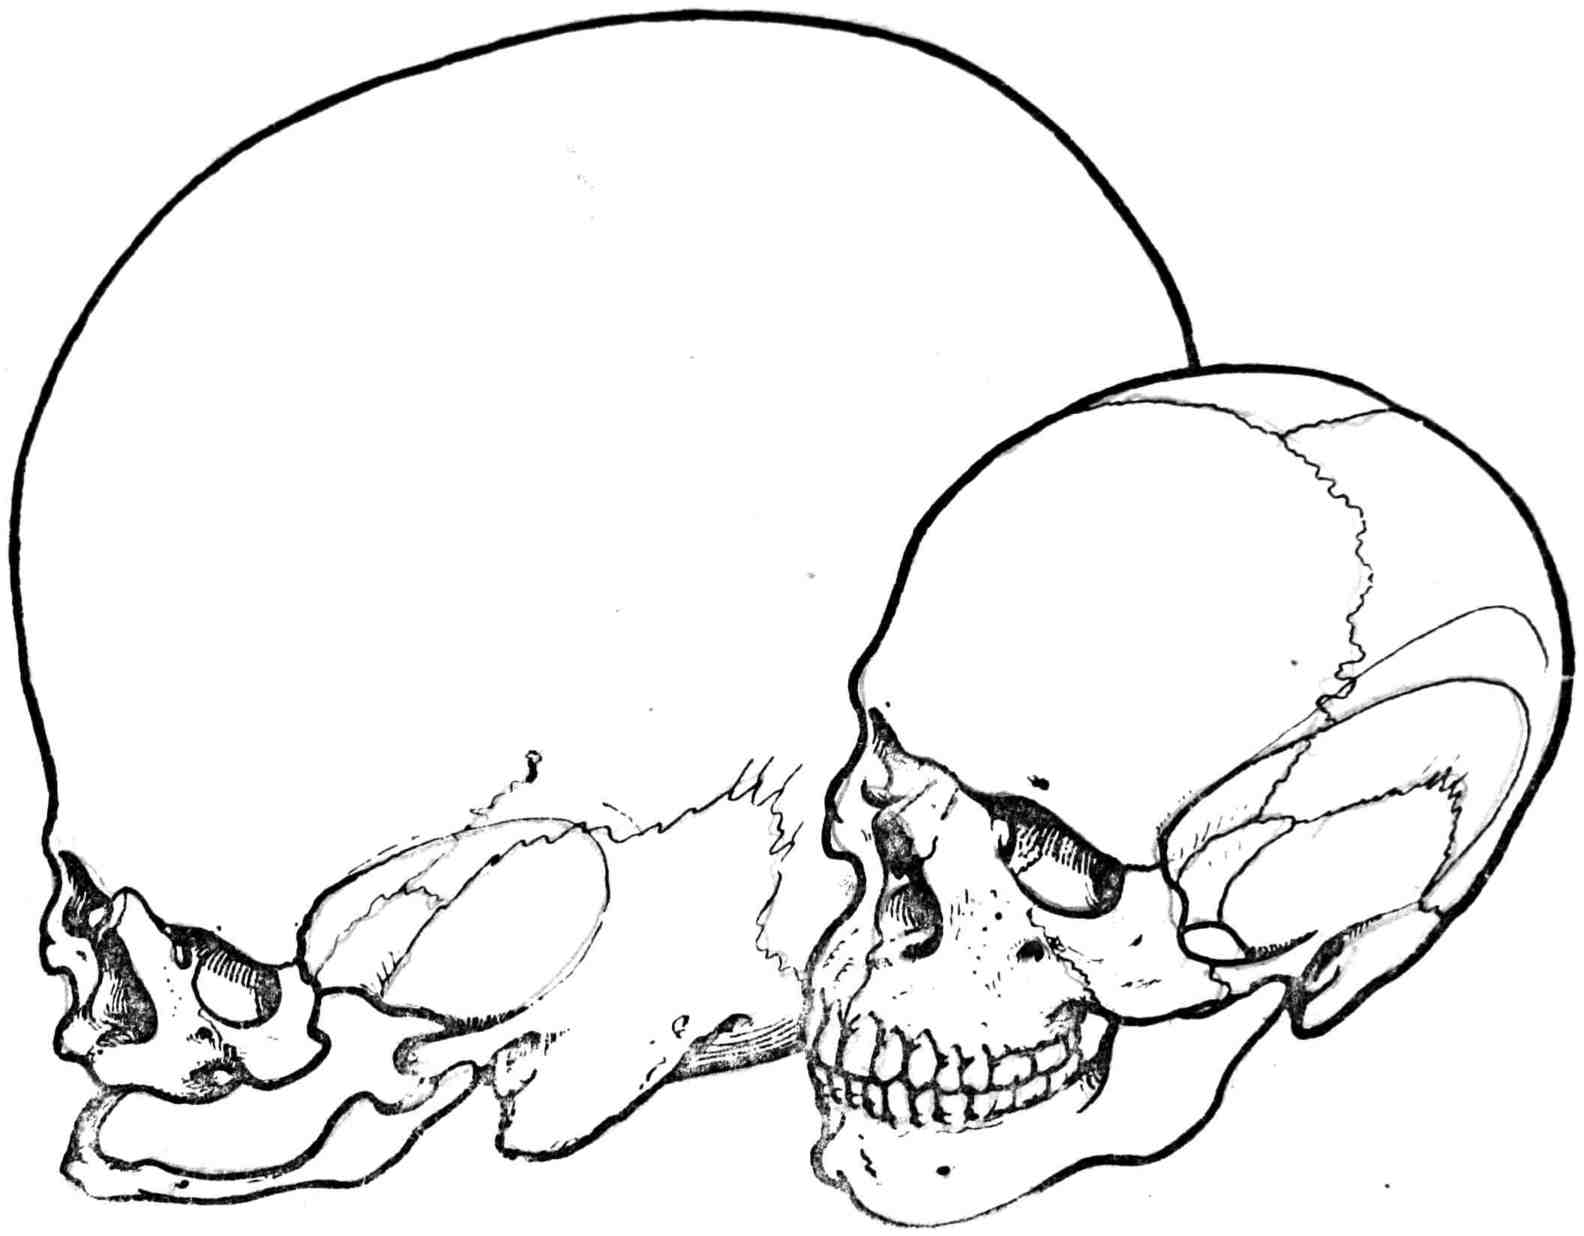 Рис. 333. Череп современного человека (Homo sapiens) и череп будущего человека (Homo sapientissimus)